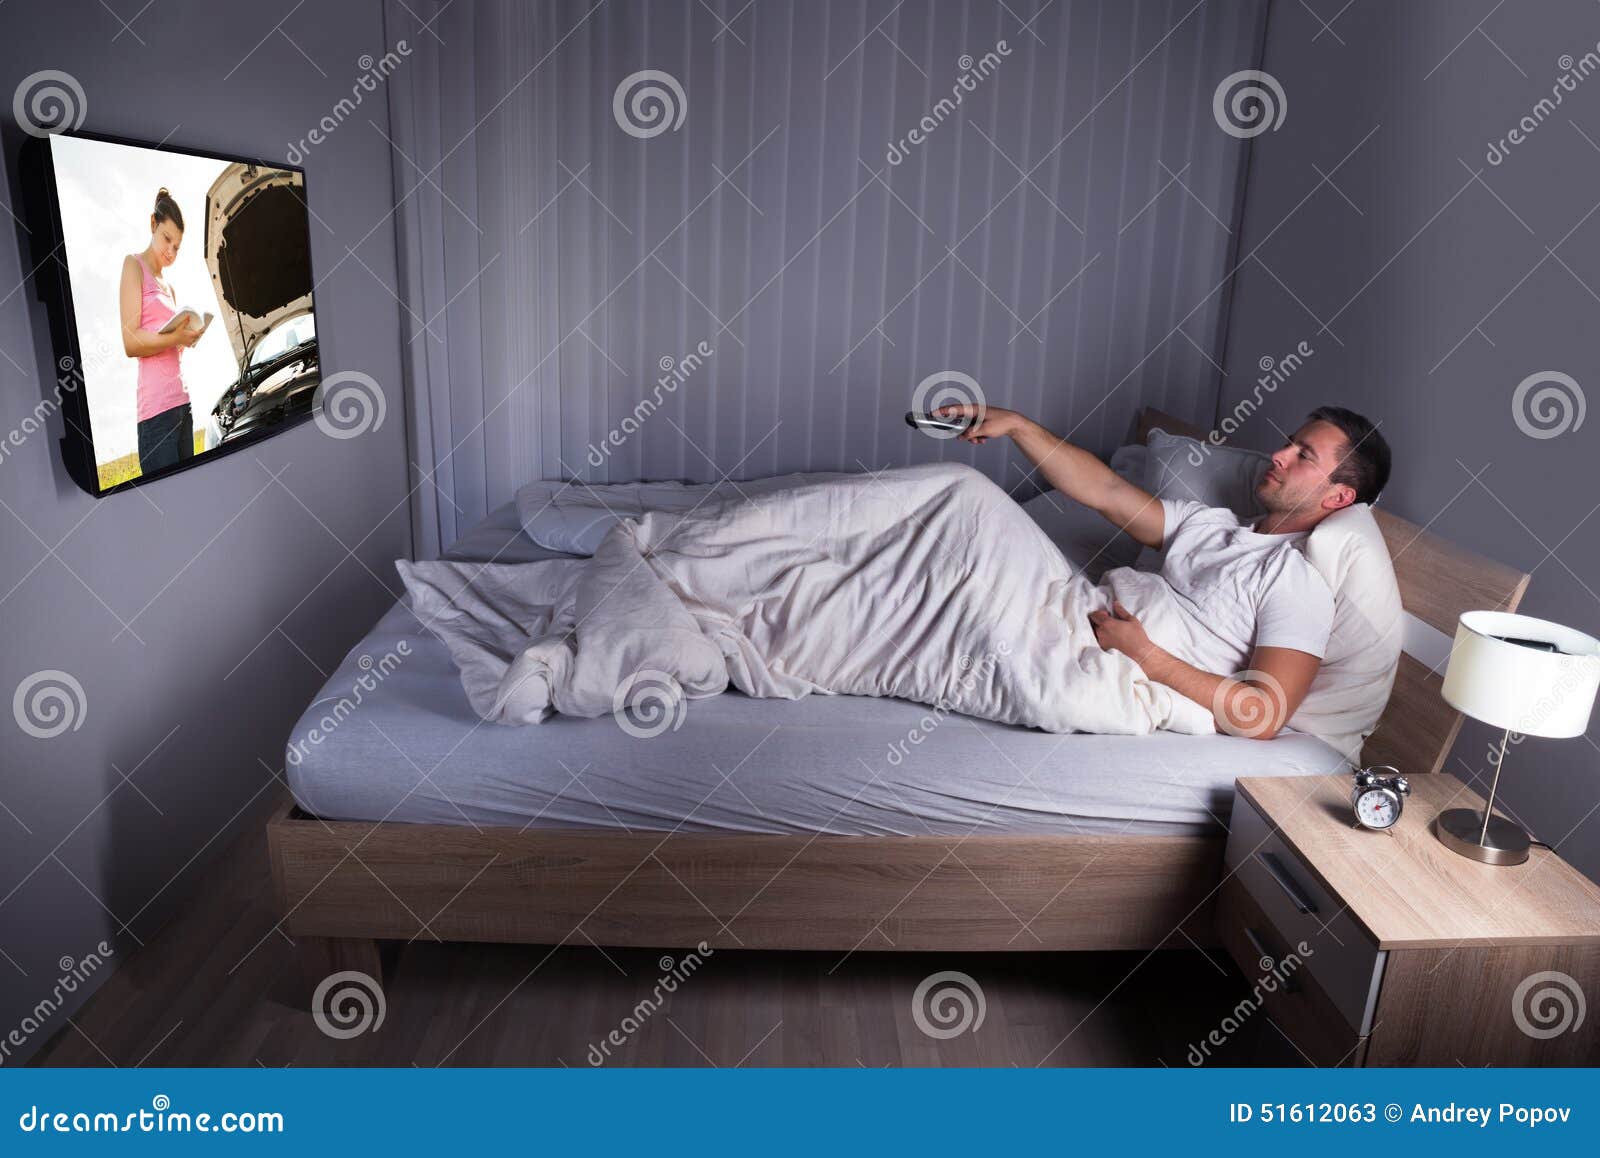 В спальне перед телевизором. Человек перед телевизором. Кровать с телевизором. Люди в спальне. Телевизор перед кроватью.